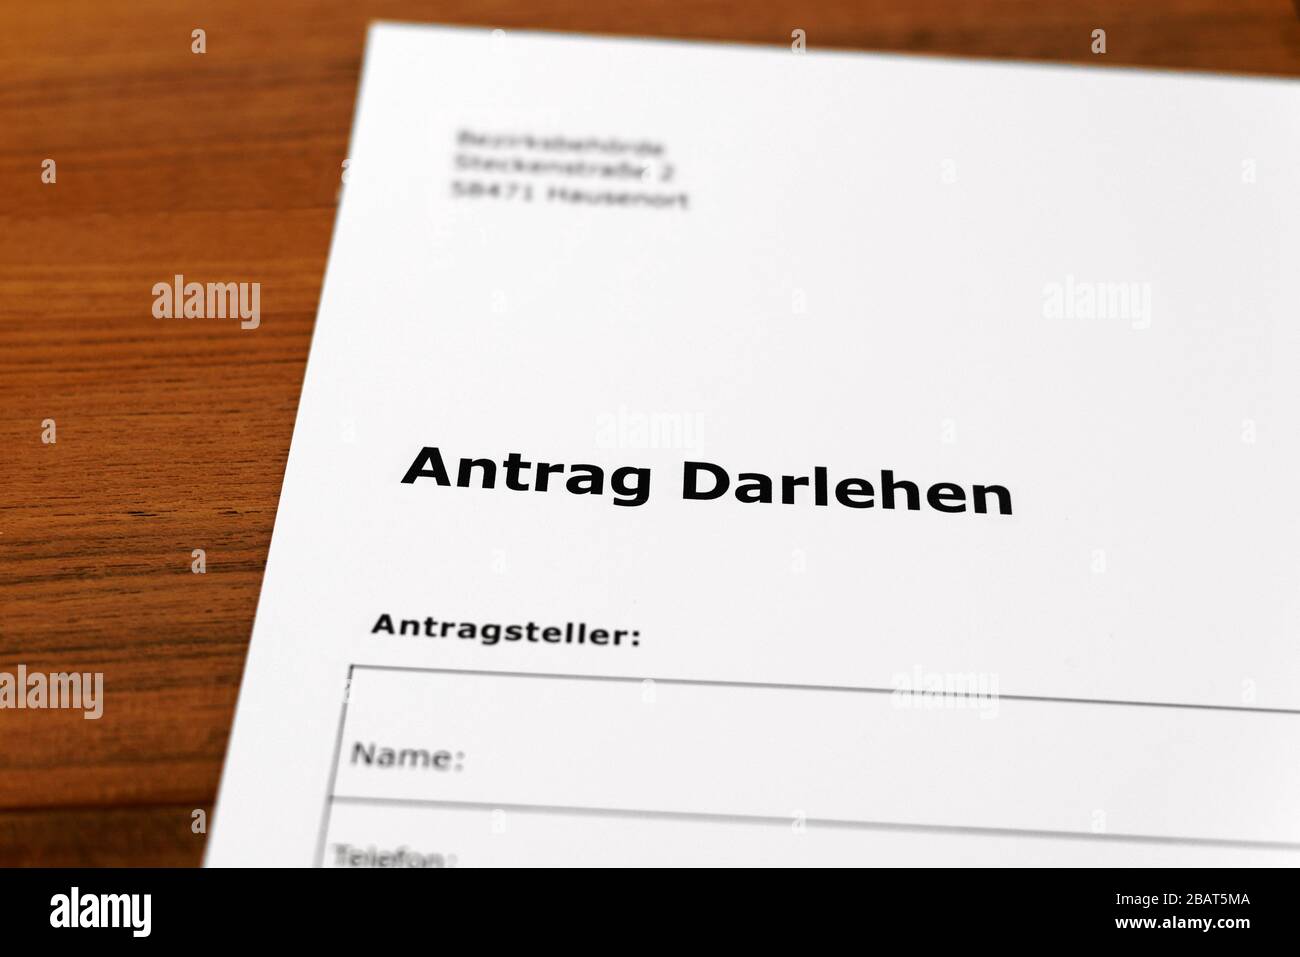 Una hoja de papel con las palabras alemanas 'Antrag Darlehen' - Traducción en englisch: Solicitud de préstamo. Foto de stock